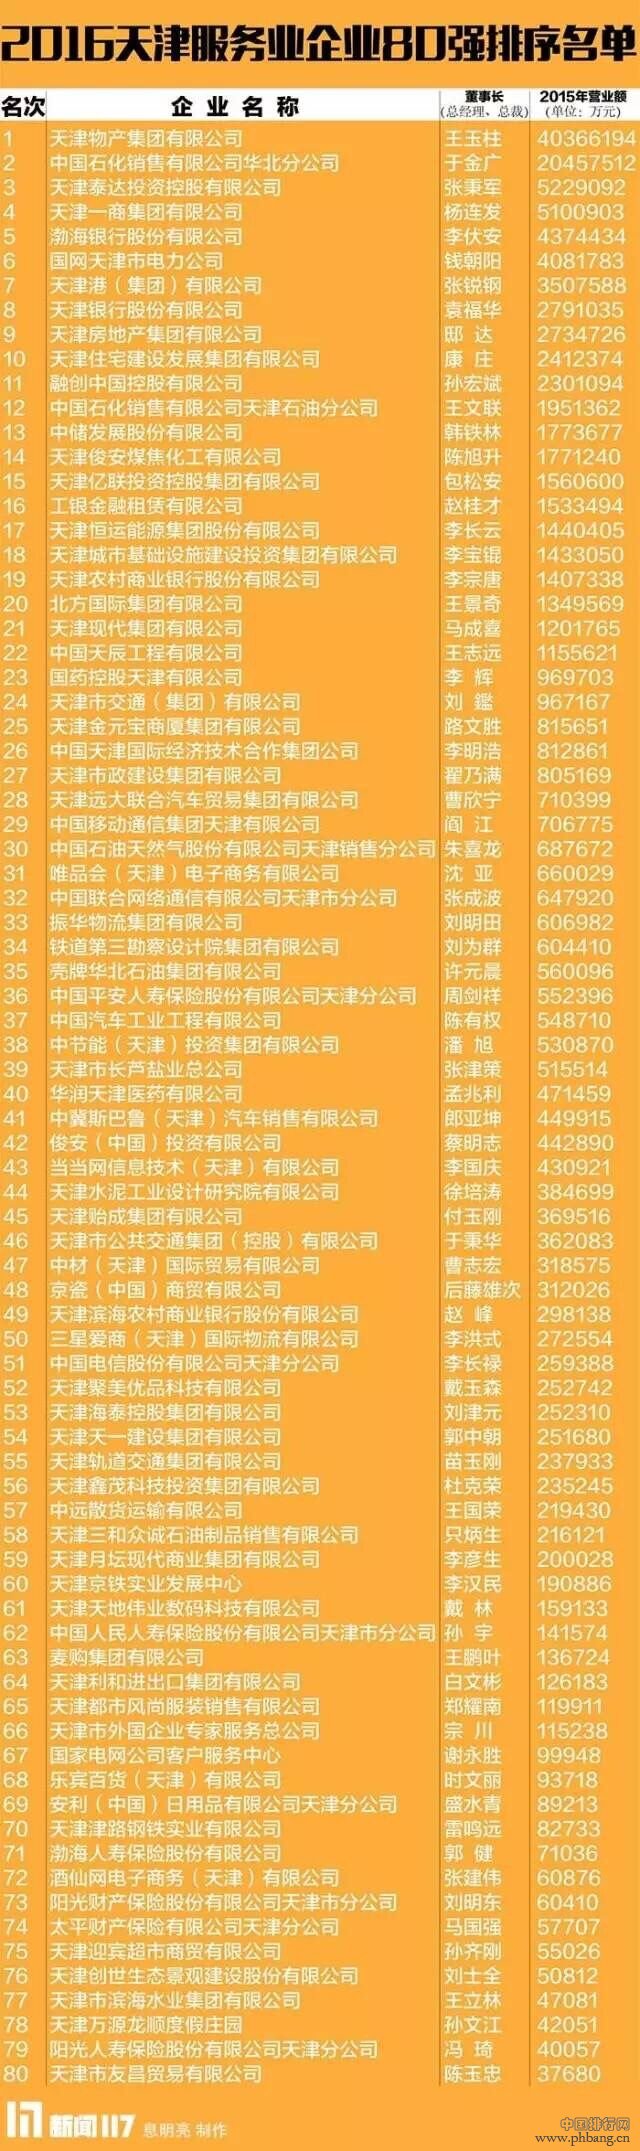 2016天津服务业80强和2016天津制造业80强排名